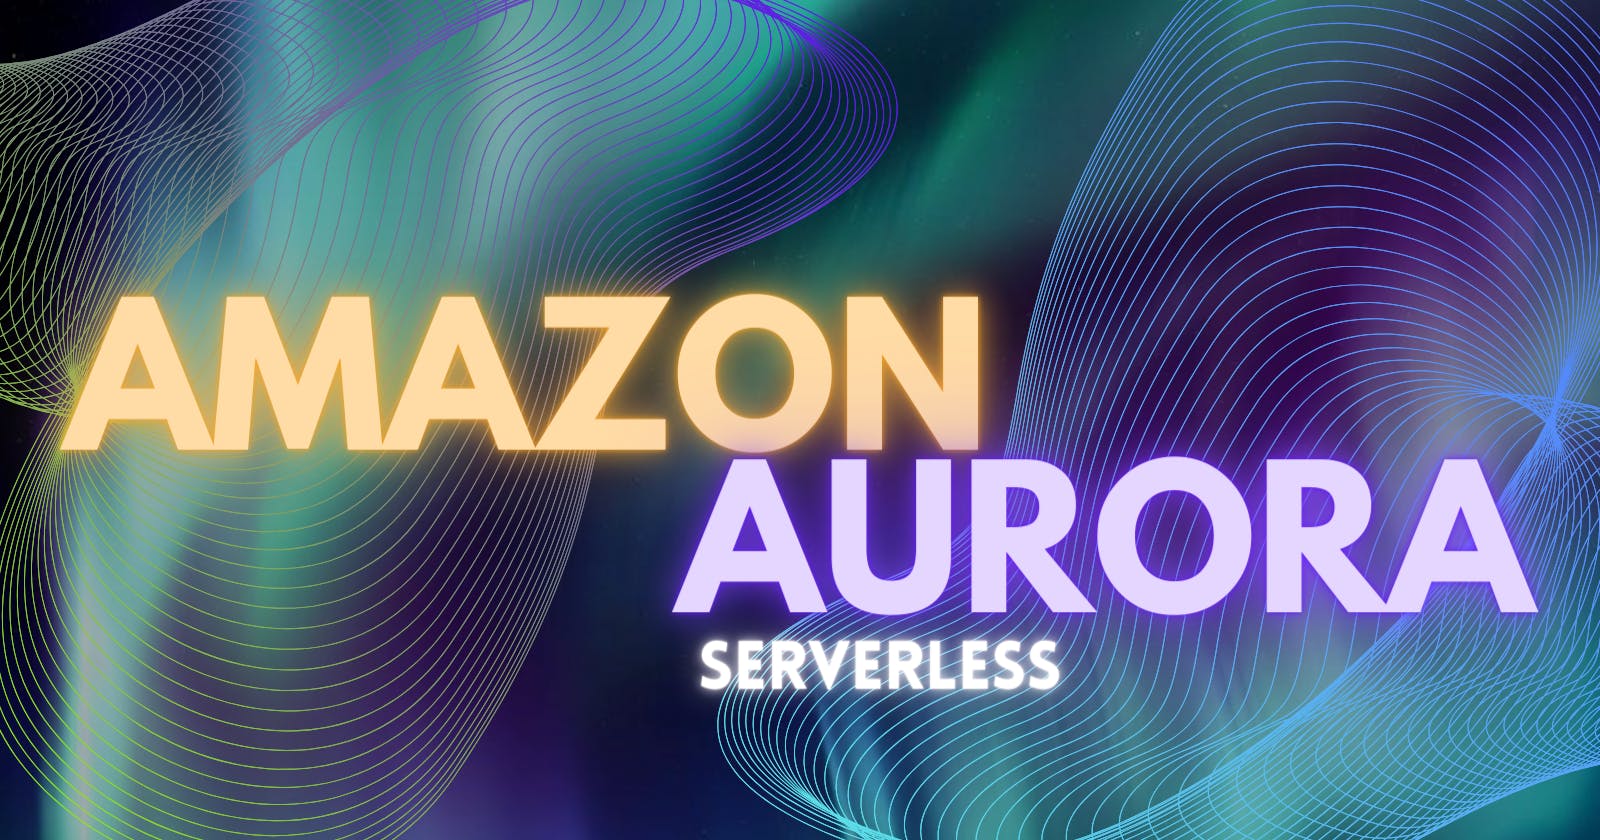 Amazon Aurora Serverless